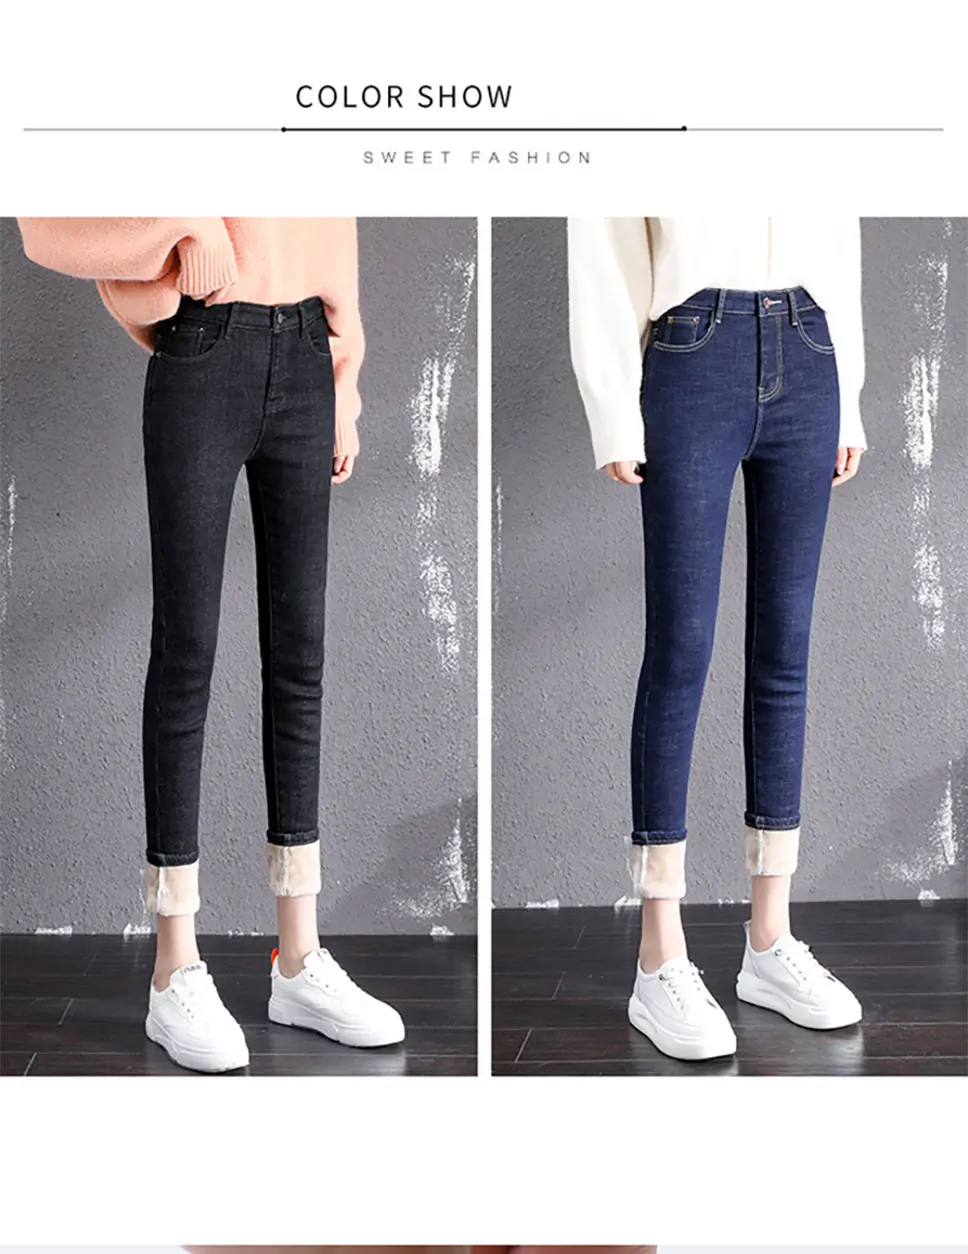 Зимние джинсы с высокой талией, женские теплые джинсы из плотного бархата, черные джинсы для мамы, джинсы из овечьей шерсти, бархатные обтягивающие джинсы, Стрейчевые узкие брюки